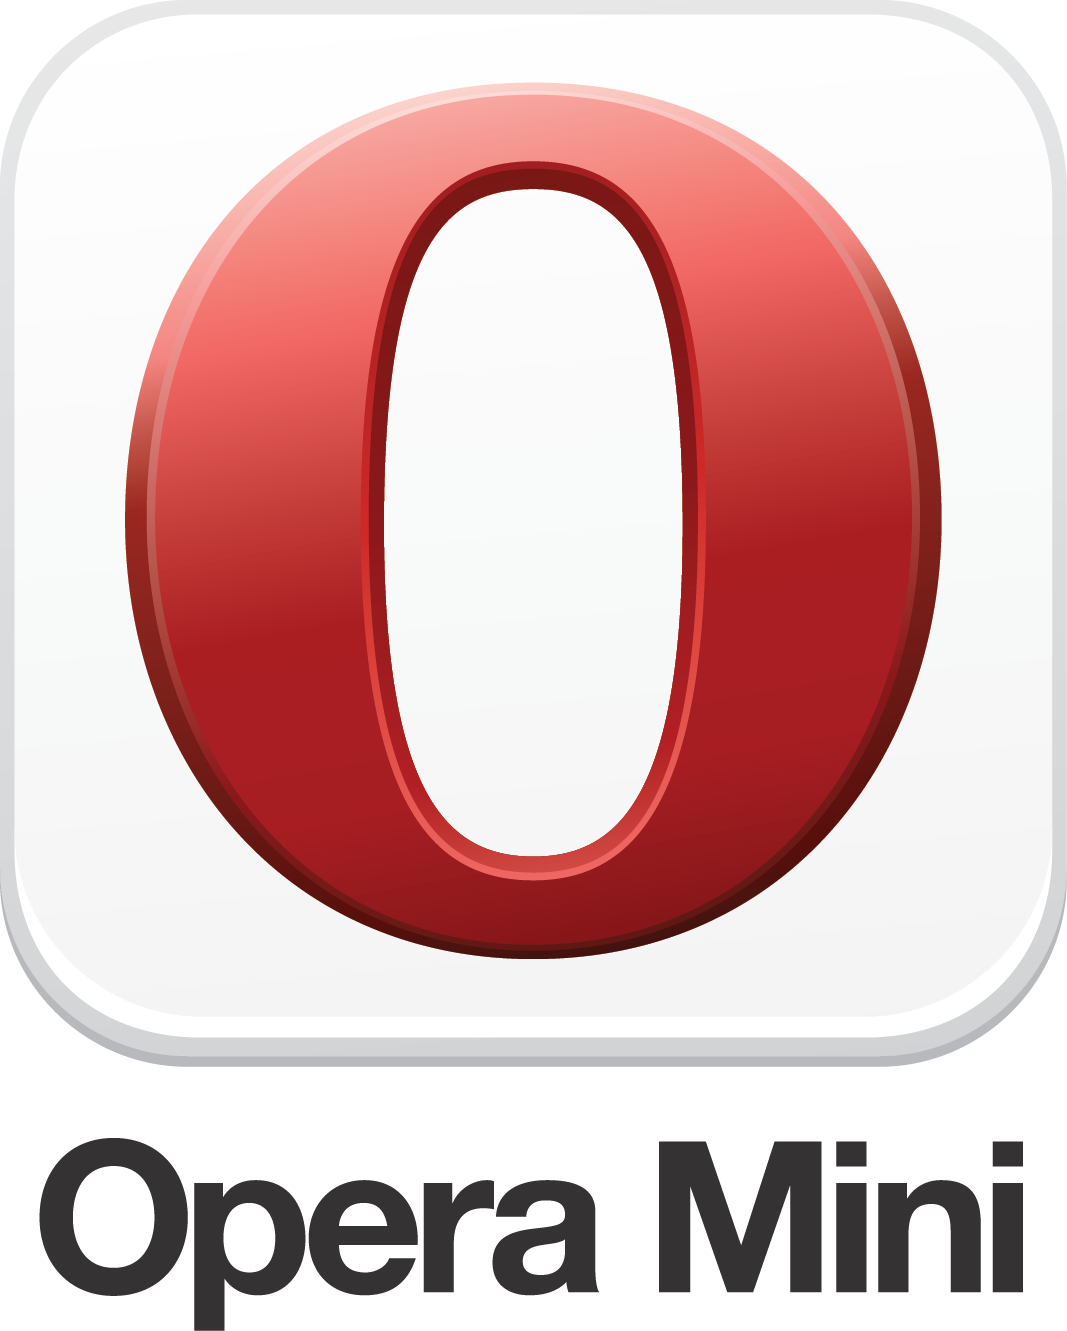 Sumedhe Dissanayake | Blog: Opera Mini .Jar Free Downloads